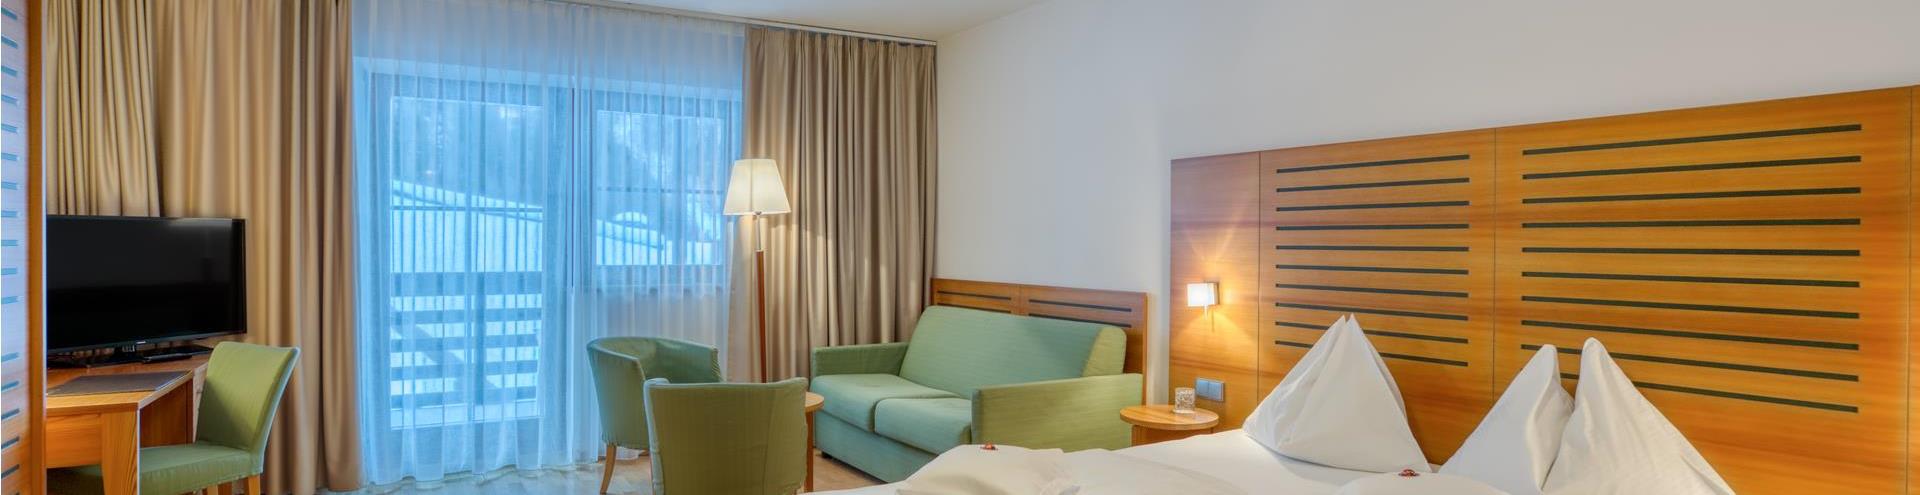 hotel-cevedale-205-komfort-gruen-1